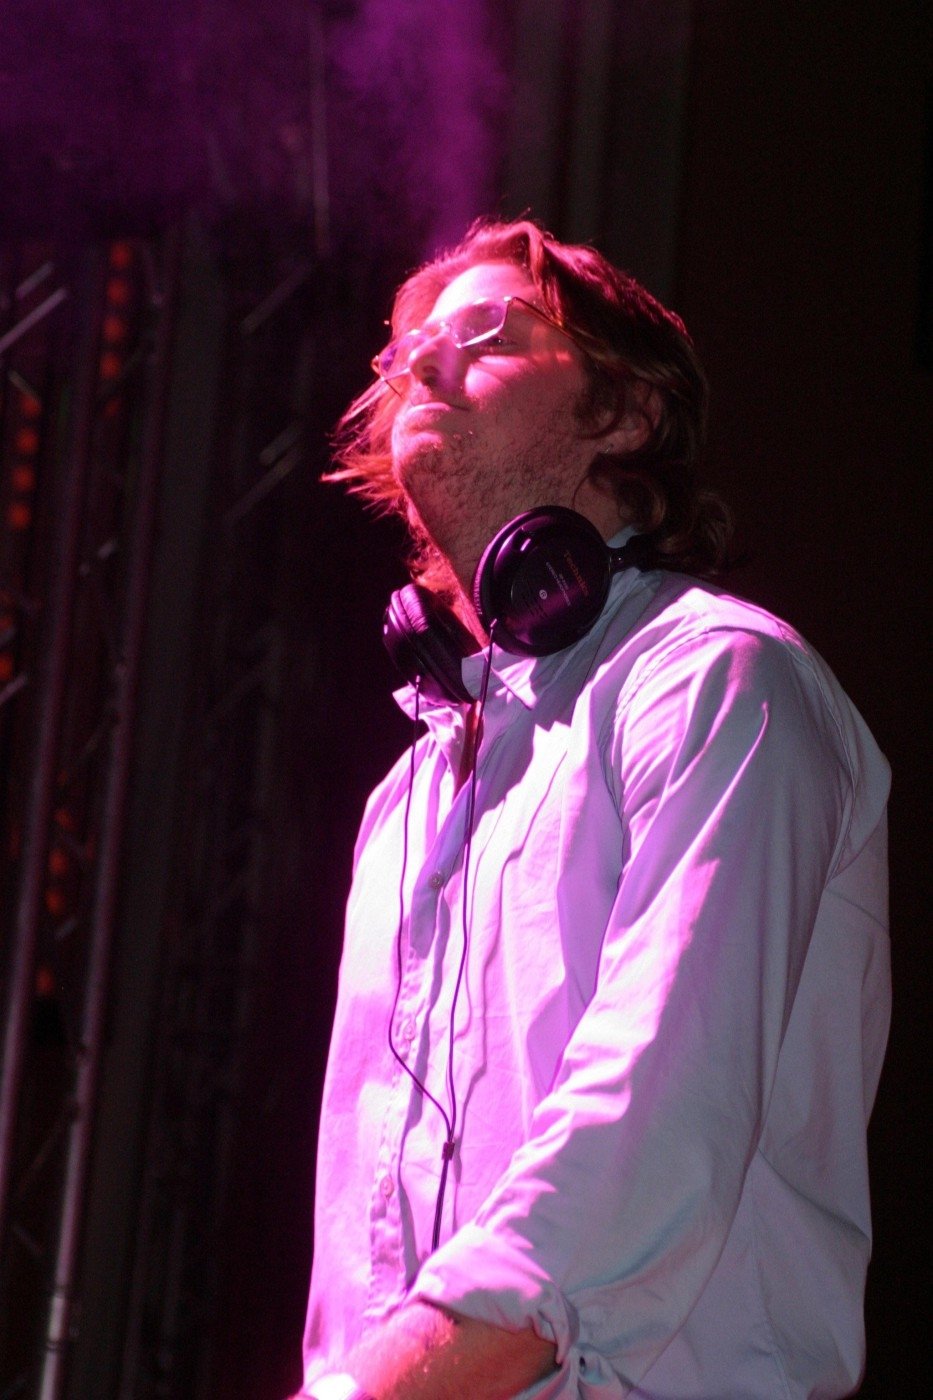 DJ Cameron Douglas - snažil se prosadit jako muzikant. Tíhl však především ke kokainu.